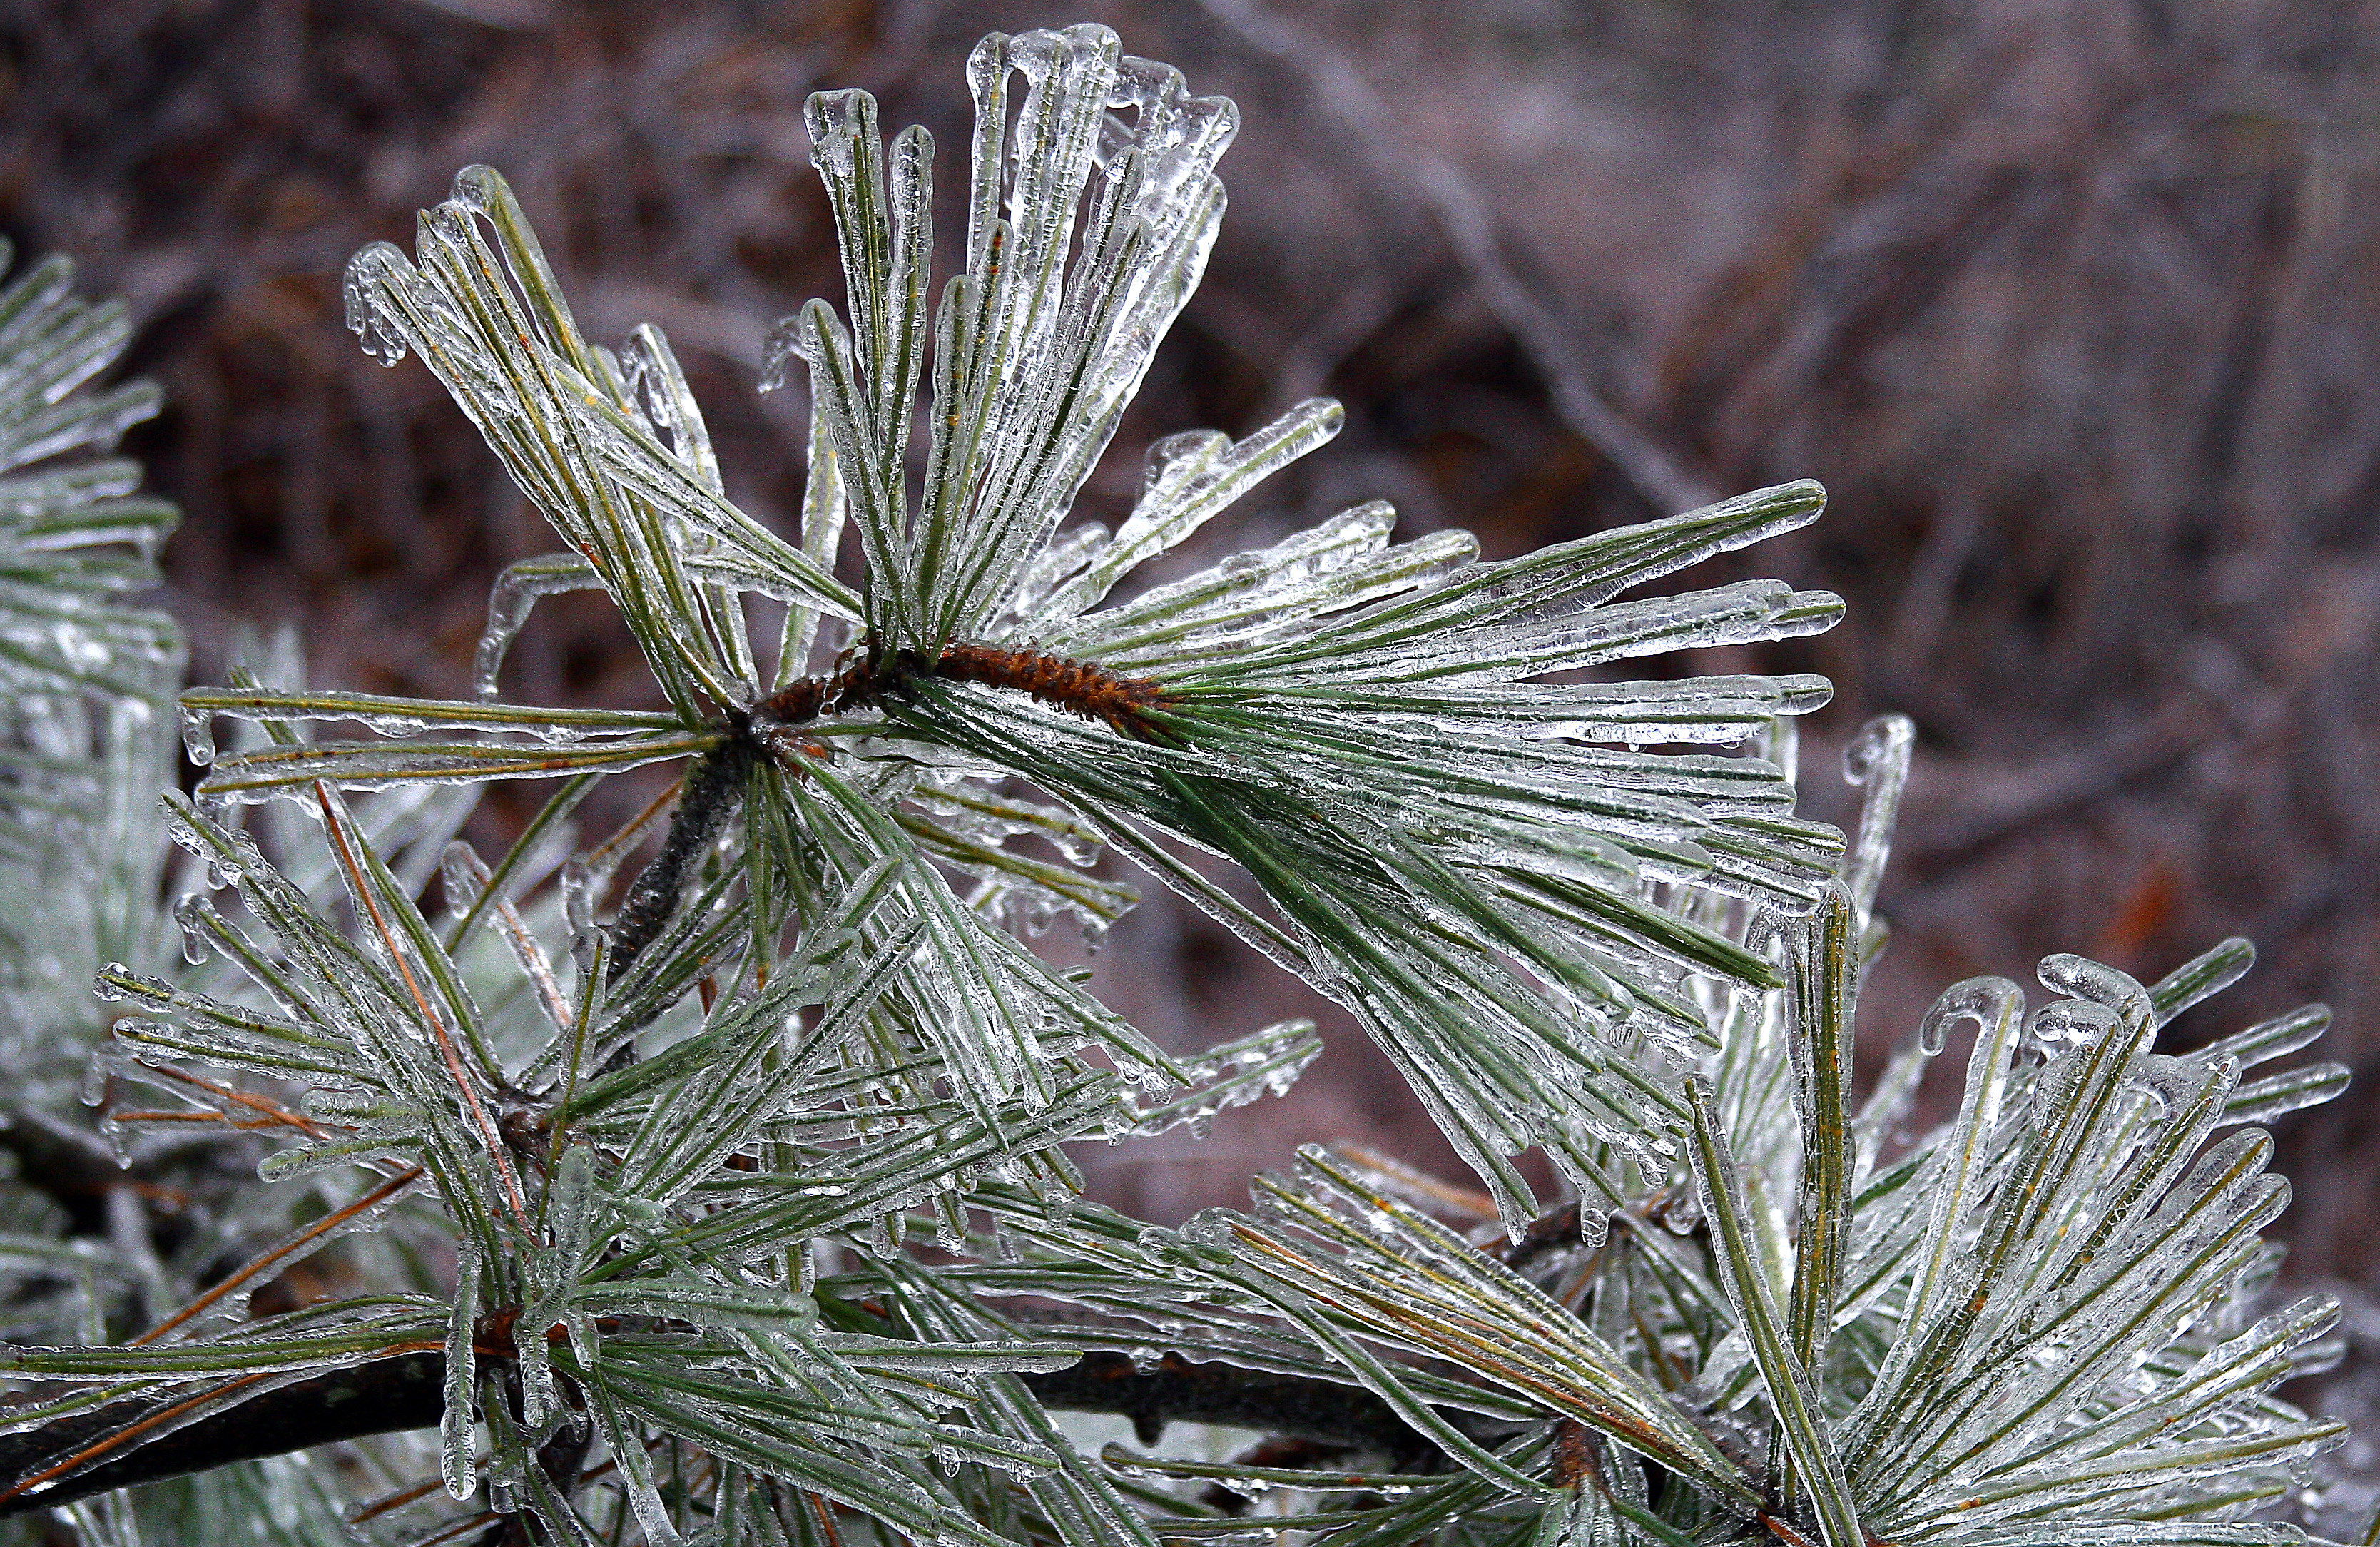 File:Icy pine, Boxborough, Massachusetts, 2008.jpg - Wikimedia Commons